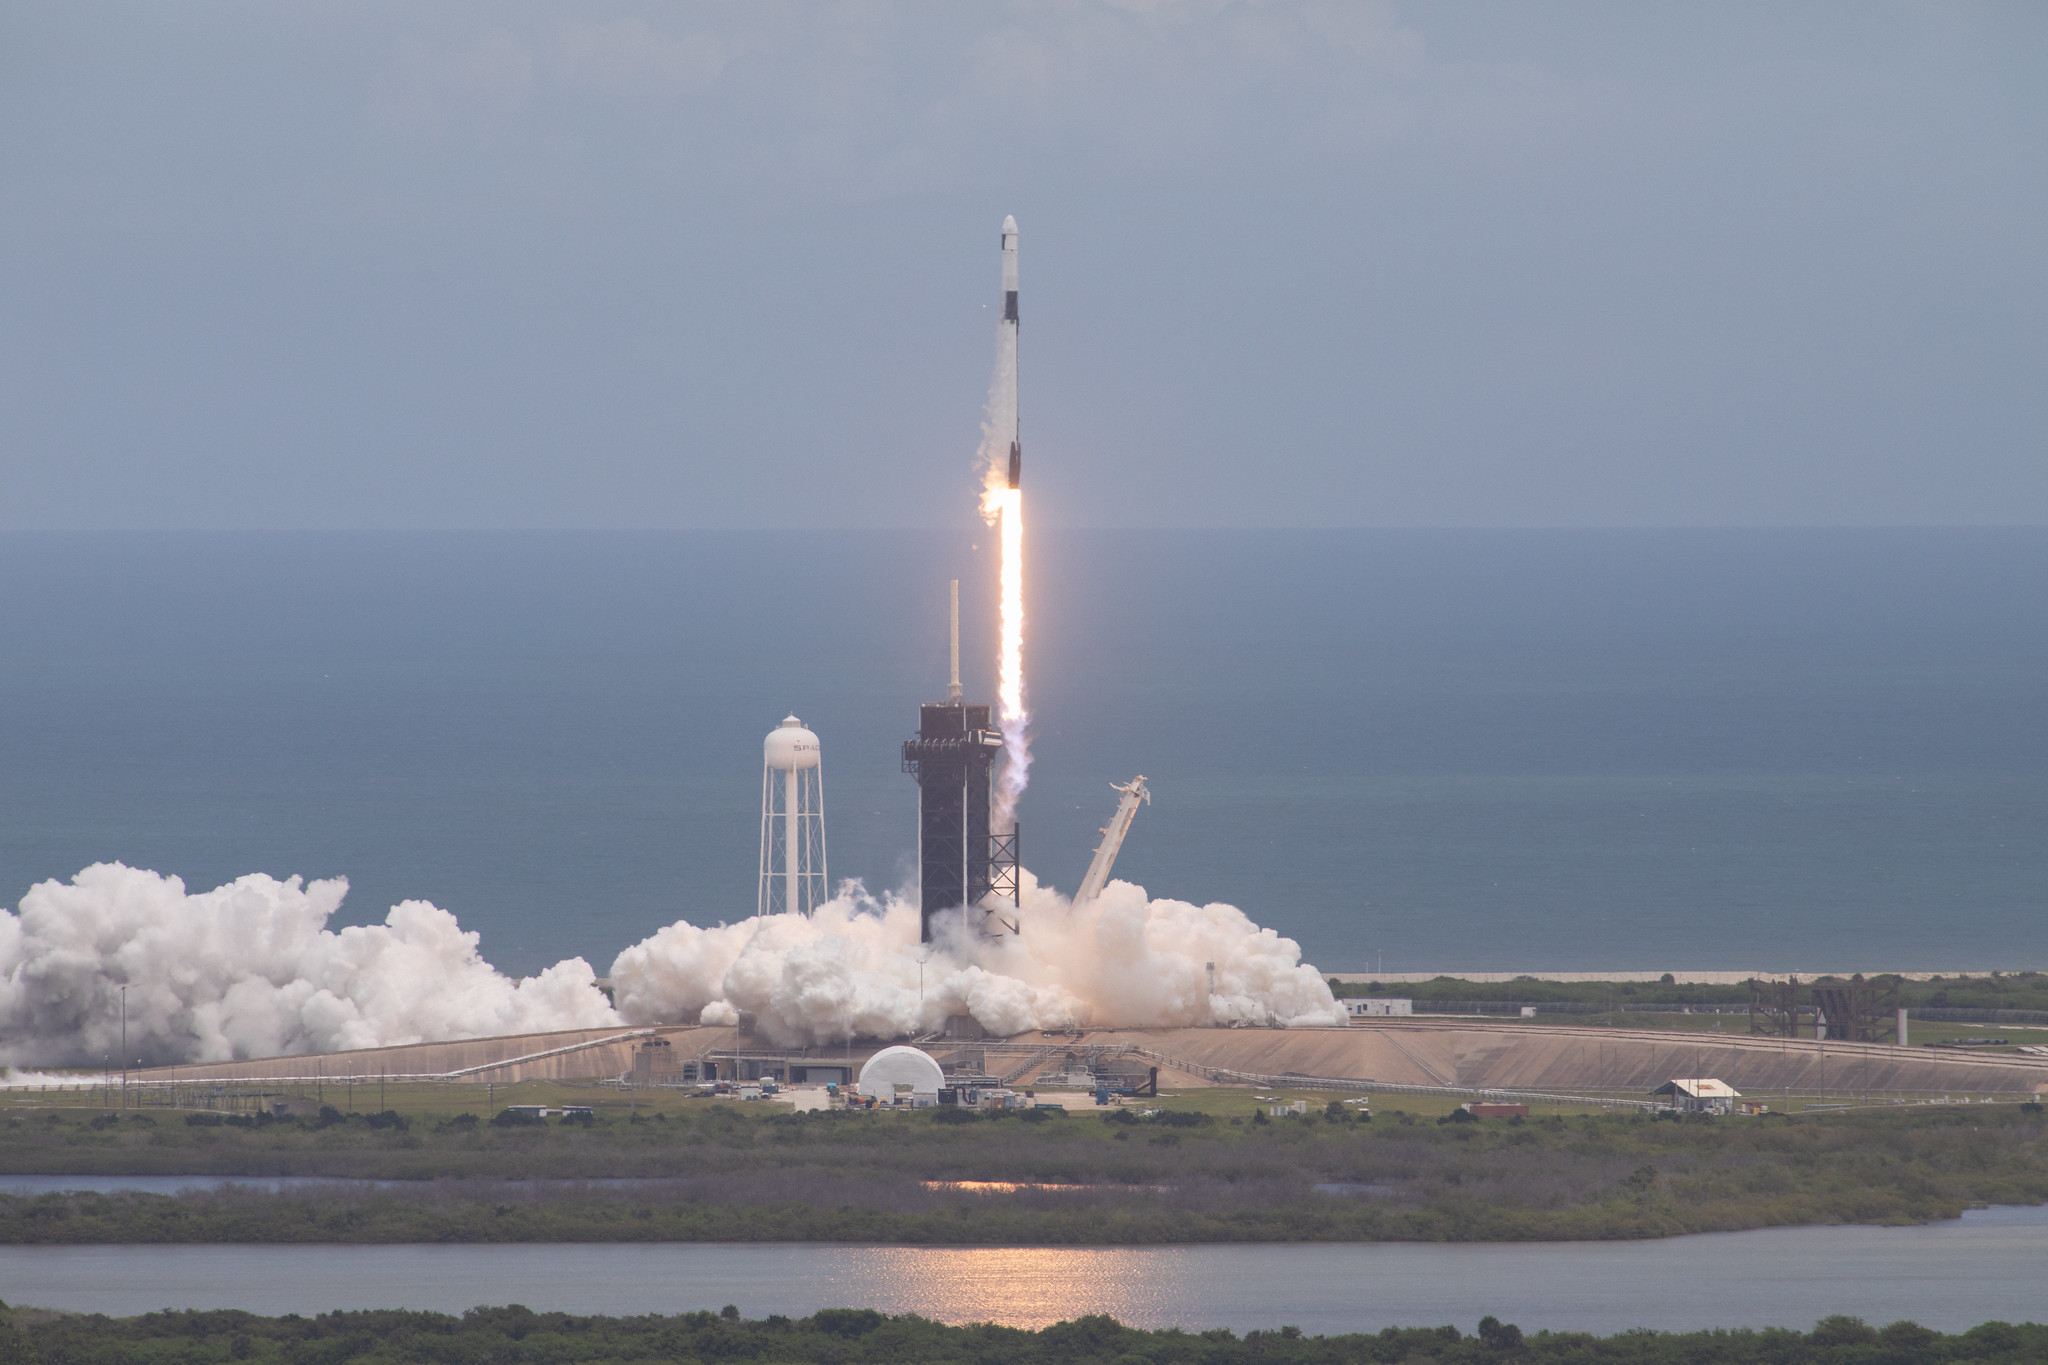 ستطلق سبيس إكس مهمة إعادة إمداد إلى محطة الفضاء الدولية يوم الثلاثاء